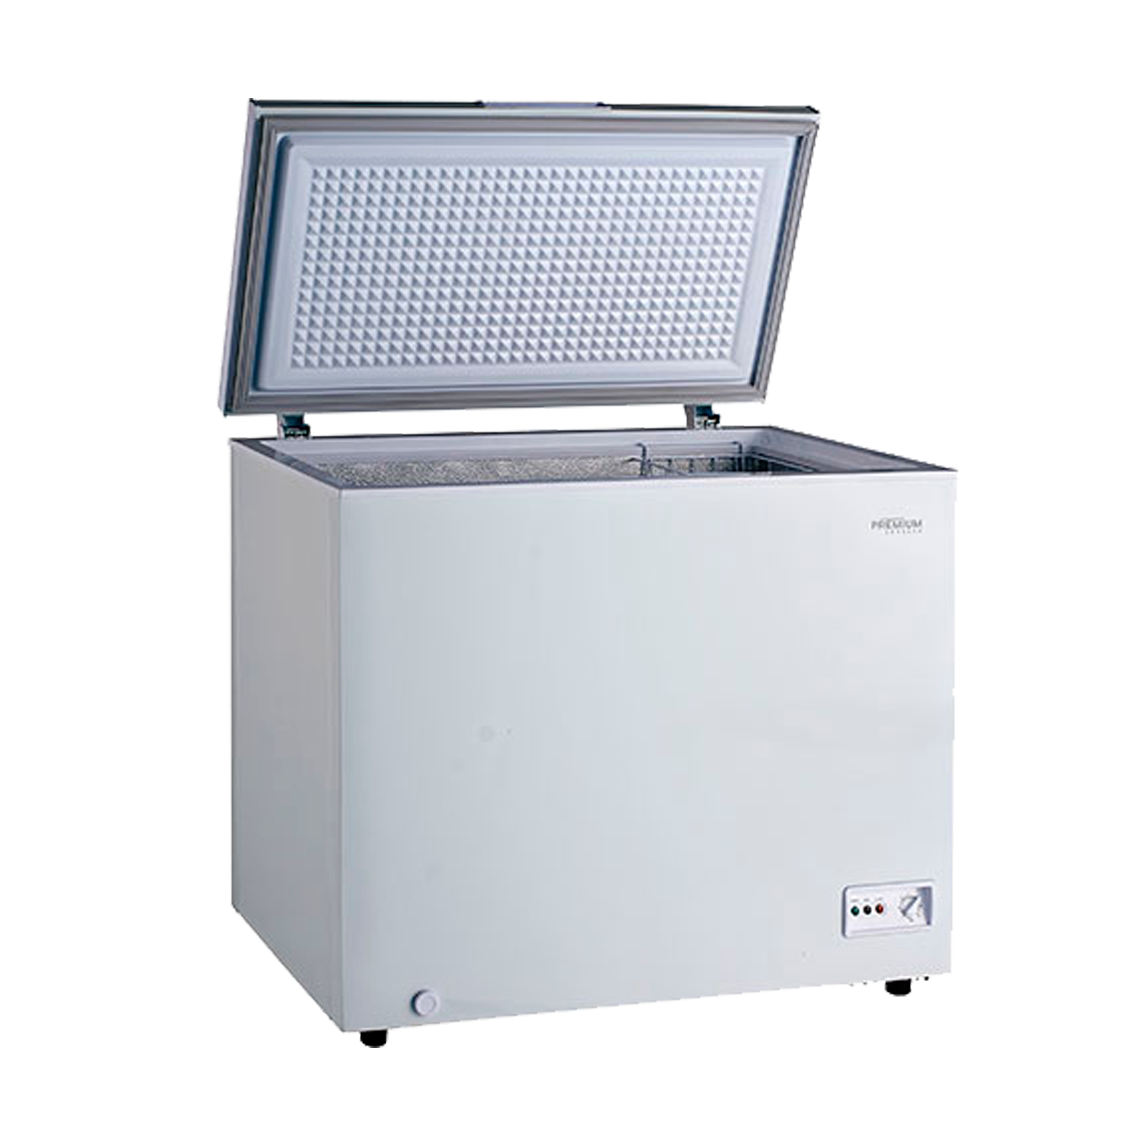 Premium Levella® 7.0 Cu Ft New White Chest Freezer. Adjustable Temperature Control.